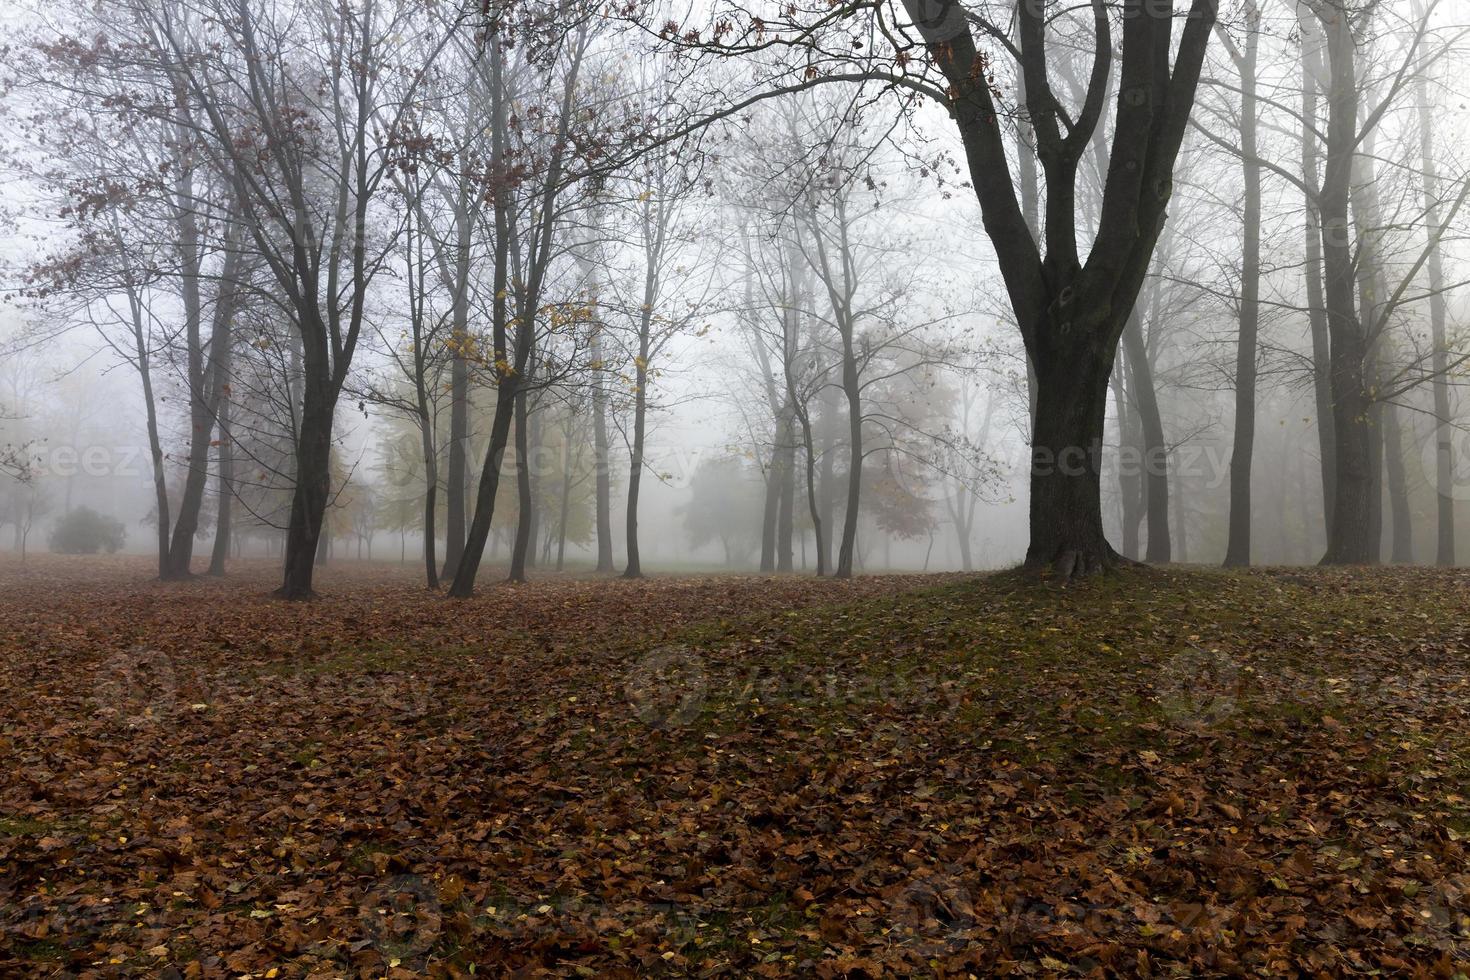 Fog in autumn season photo